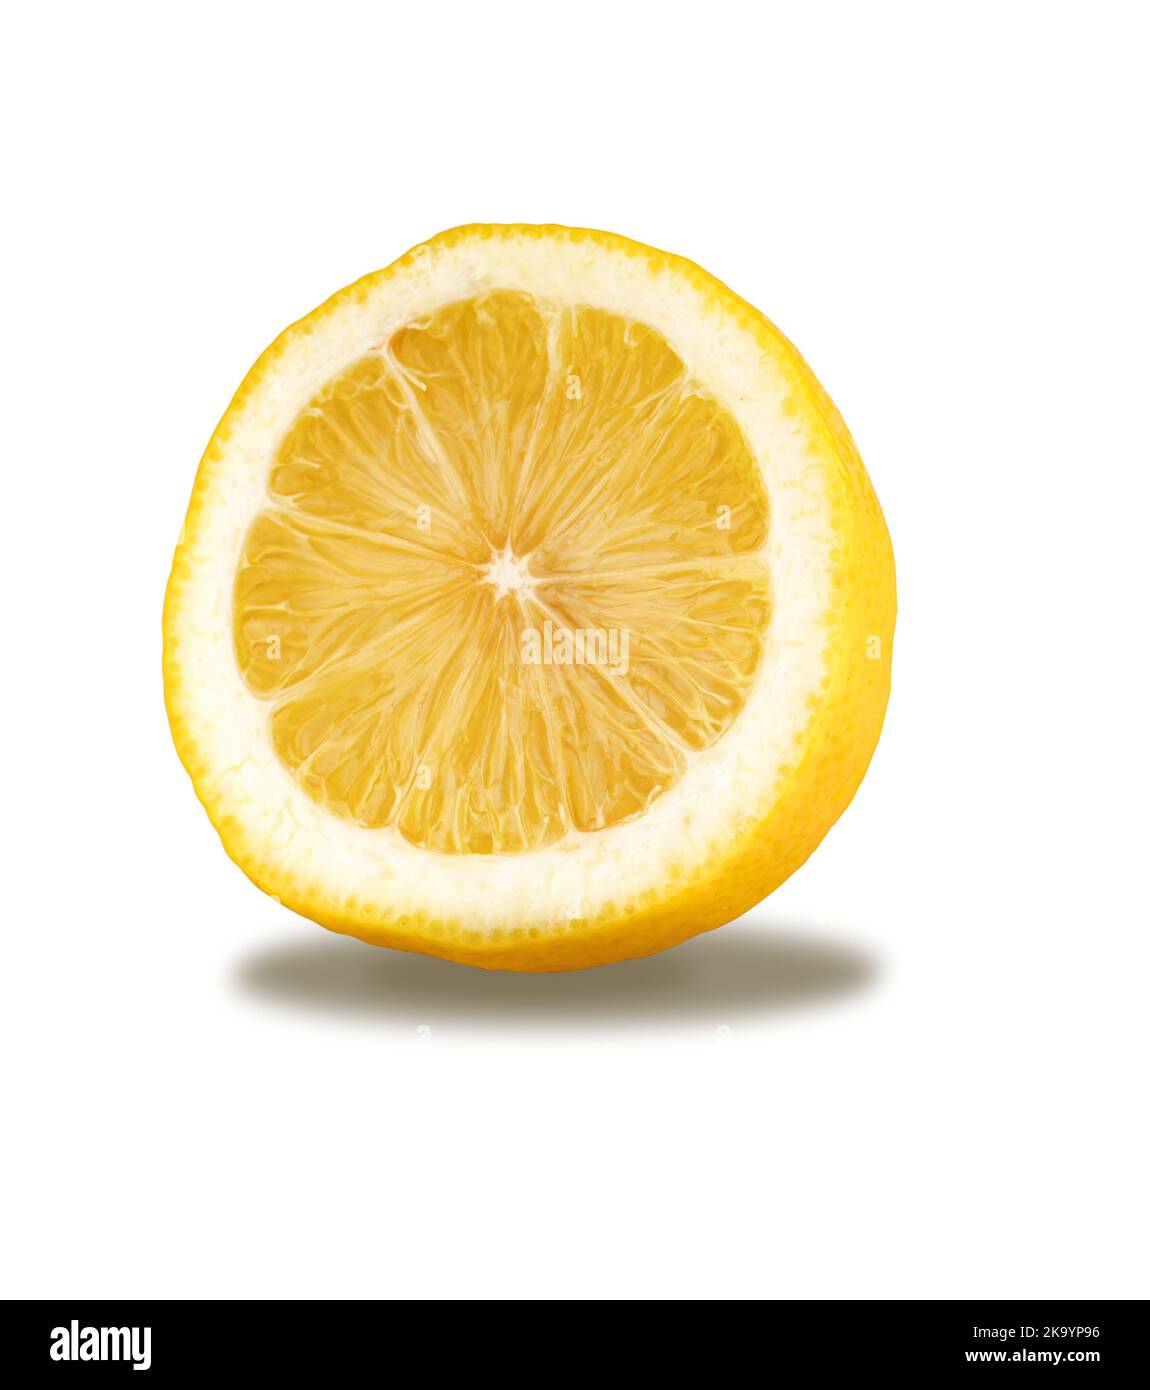 limone maturo tagliato a metà, isolato su fondo bianco Foto Stock